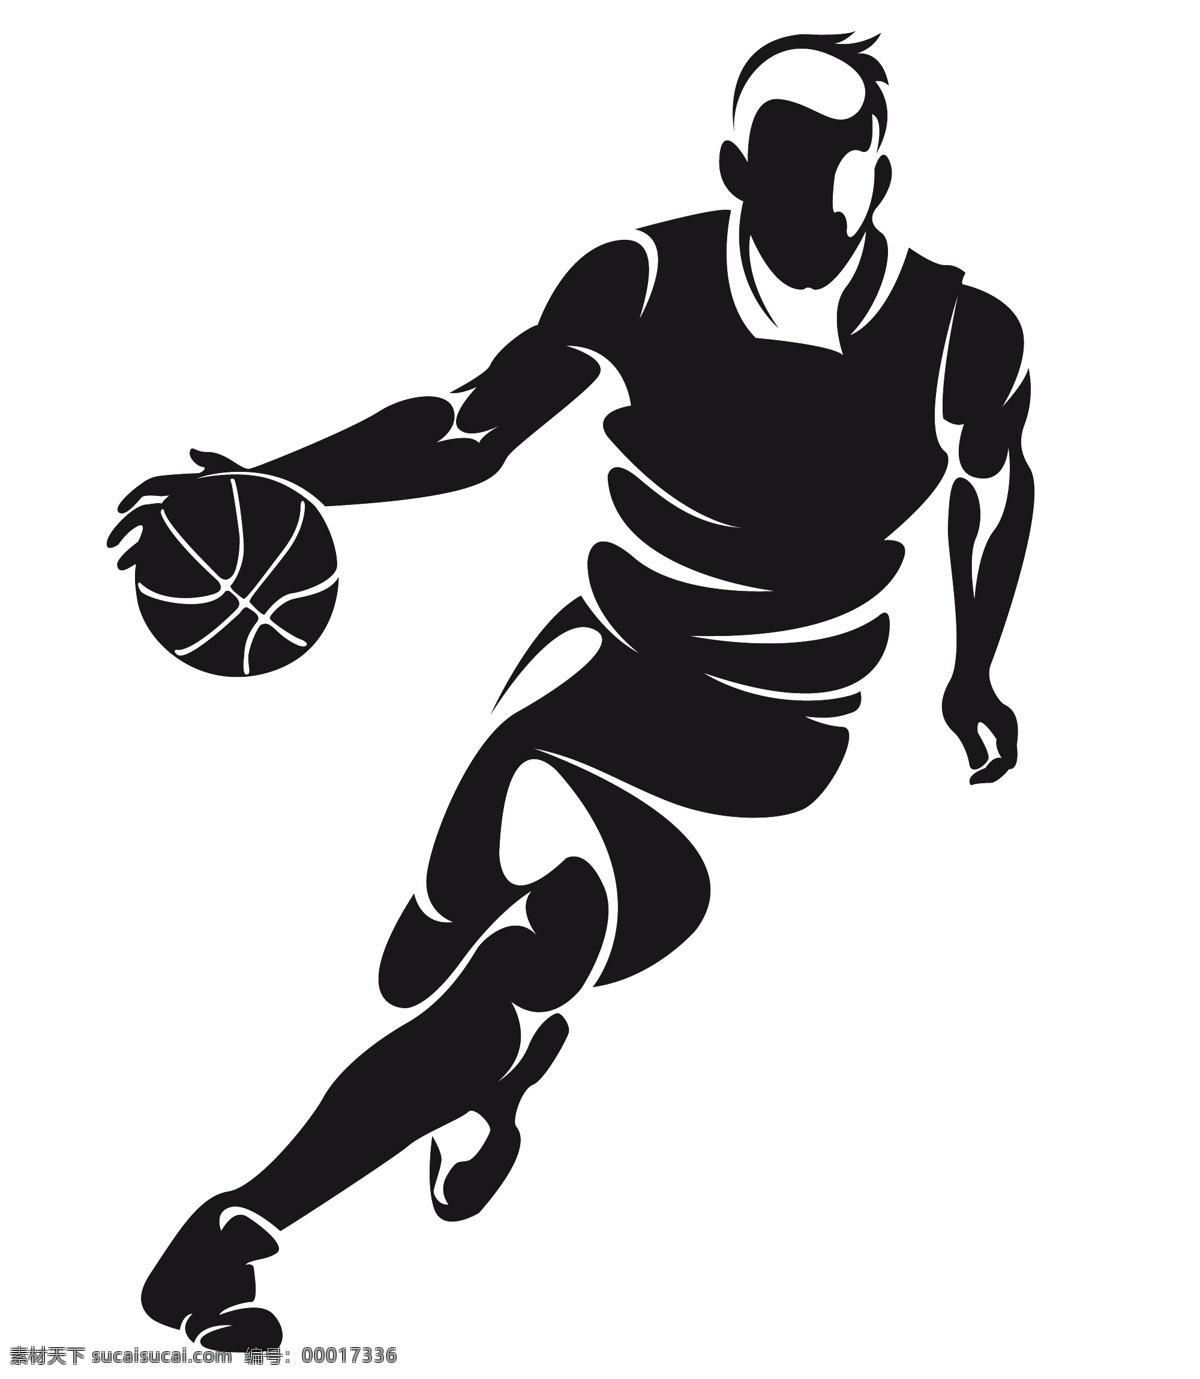 篮球运动 篮球 手绘篮球 cba 篮球运动员 人物剪影 轮廓 运球 nba basketball 体育运动 矢量 文化艺术